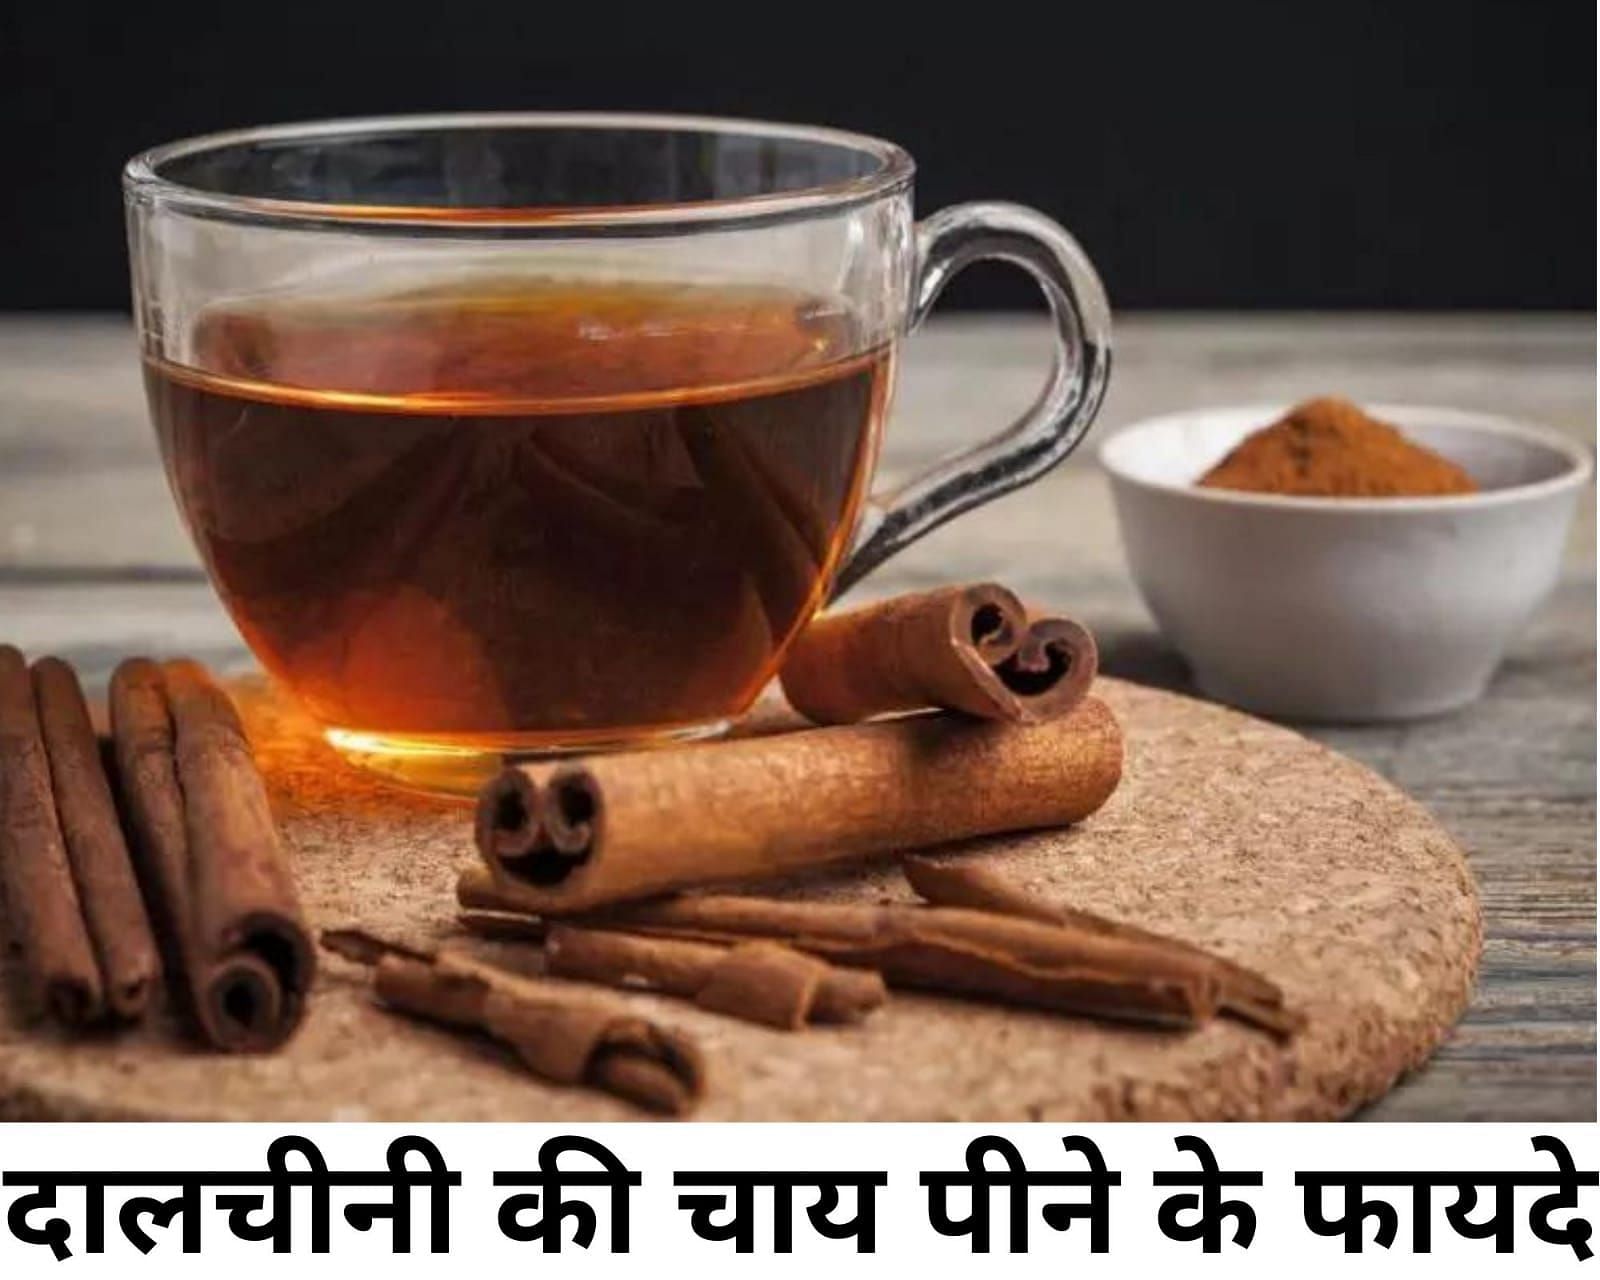 दालचीनी की चाय पीने के फायदे  (फोटो - sportskeeda hindi)